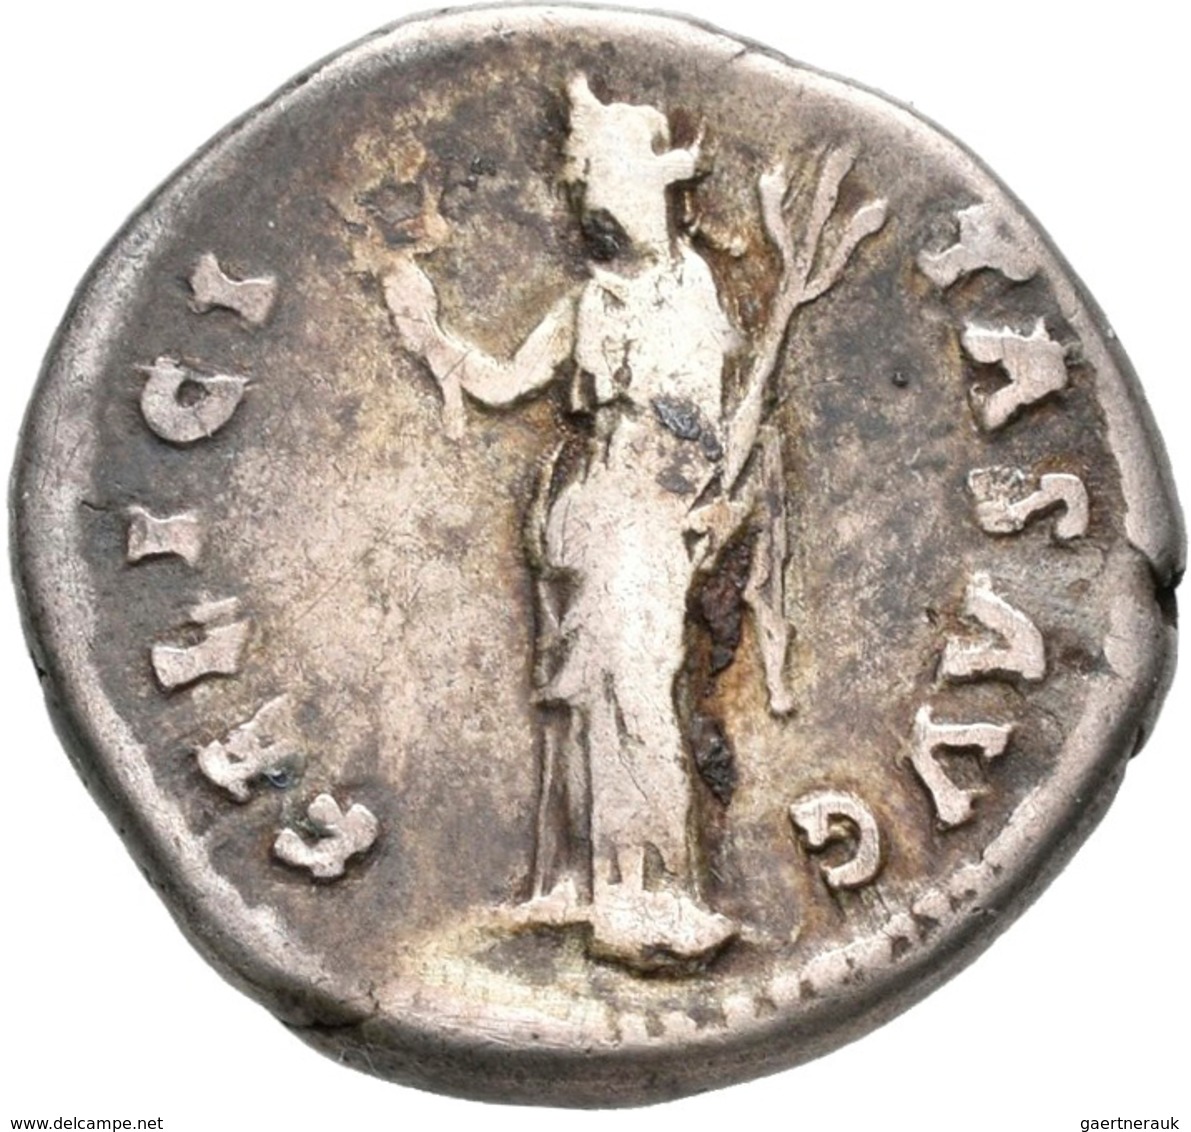 Antike: Lot 11 AR-Denare; Domitianus 69-96 Nerva 96-98, Traianus 98-117, Hadrianus 117-138, Antoninu